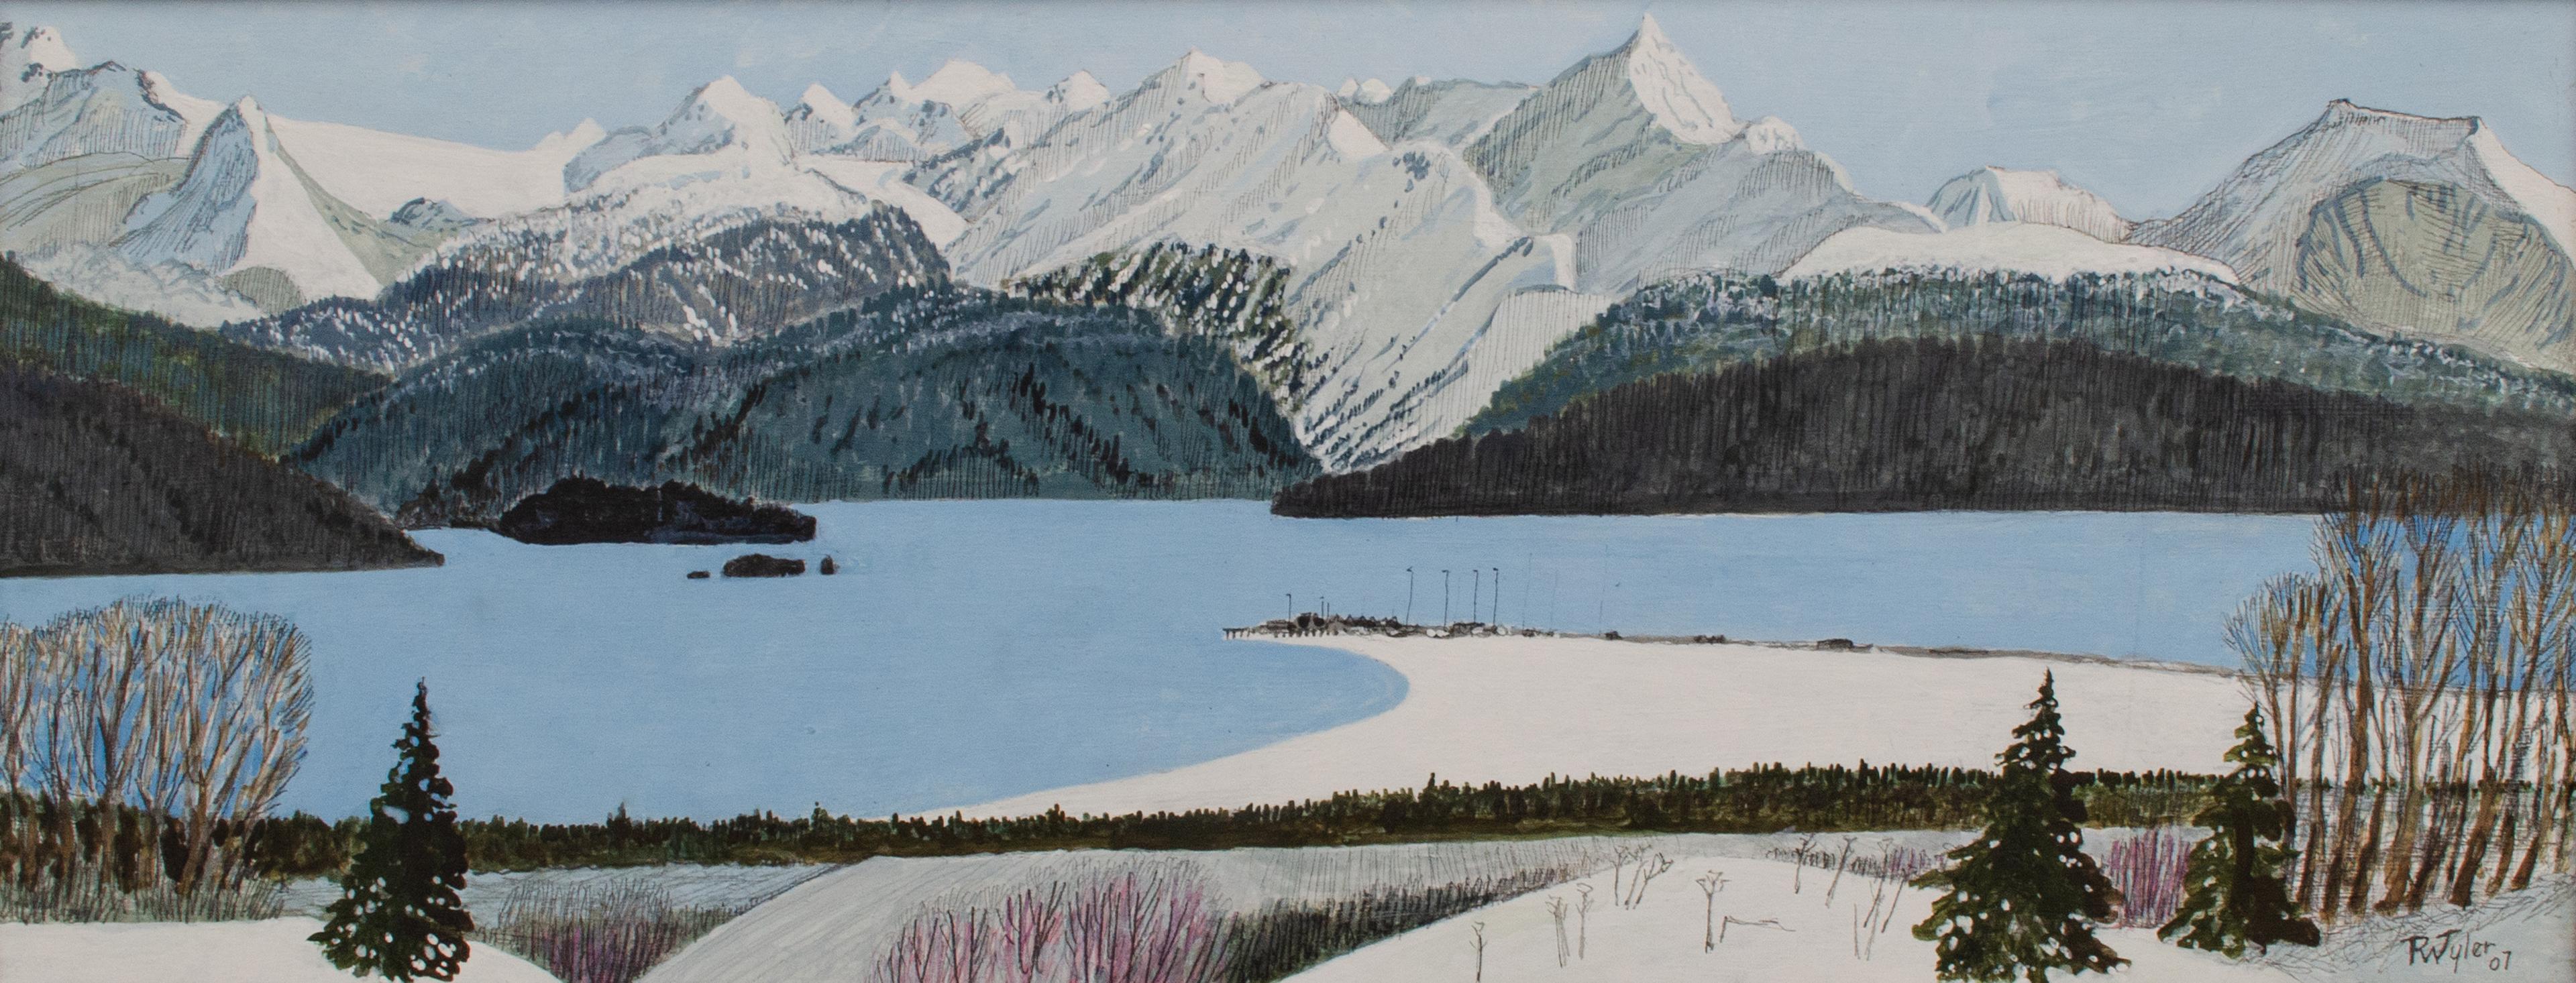 Paysage de la baie de Kachemak, Alaska par R.W. 